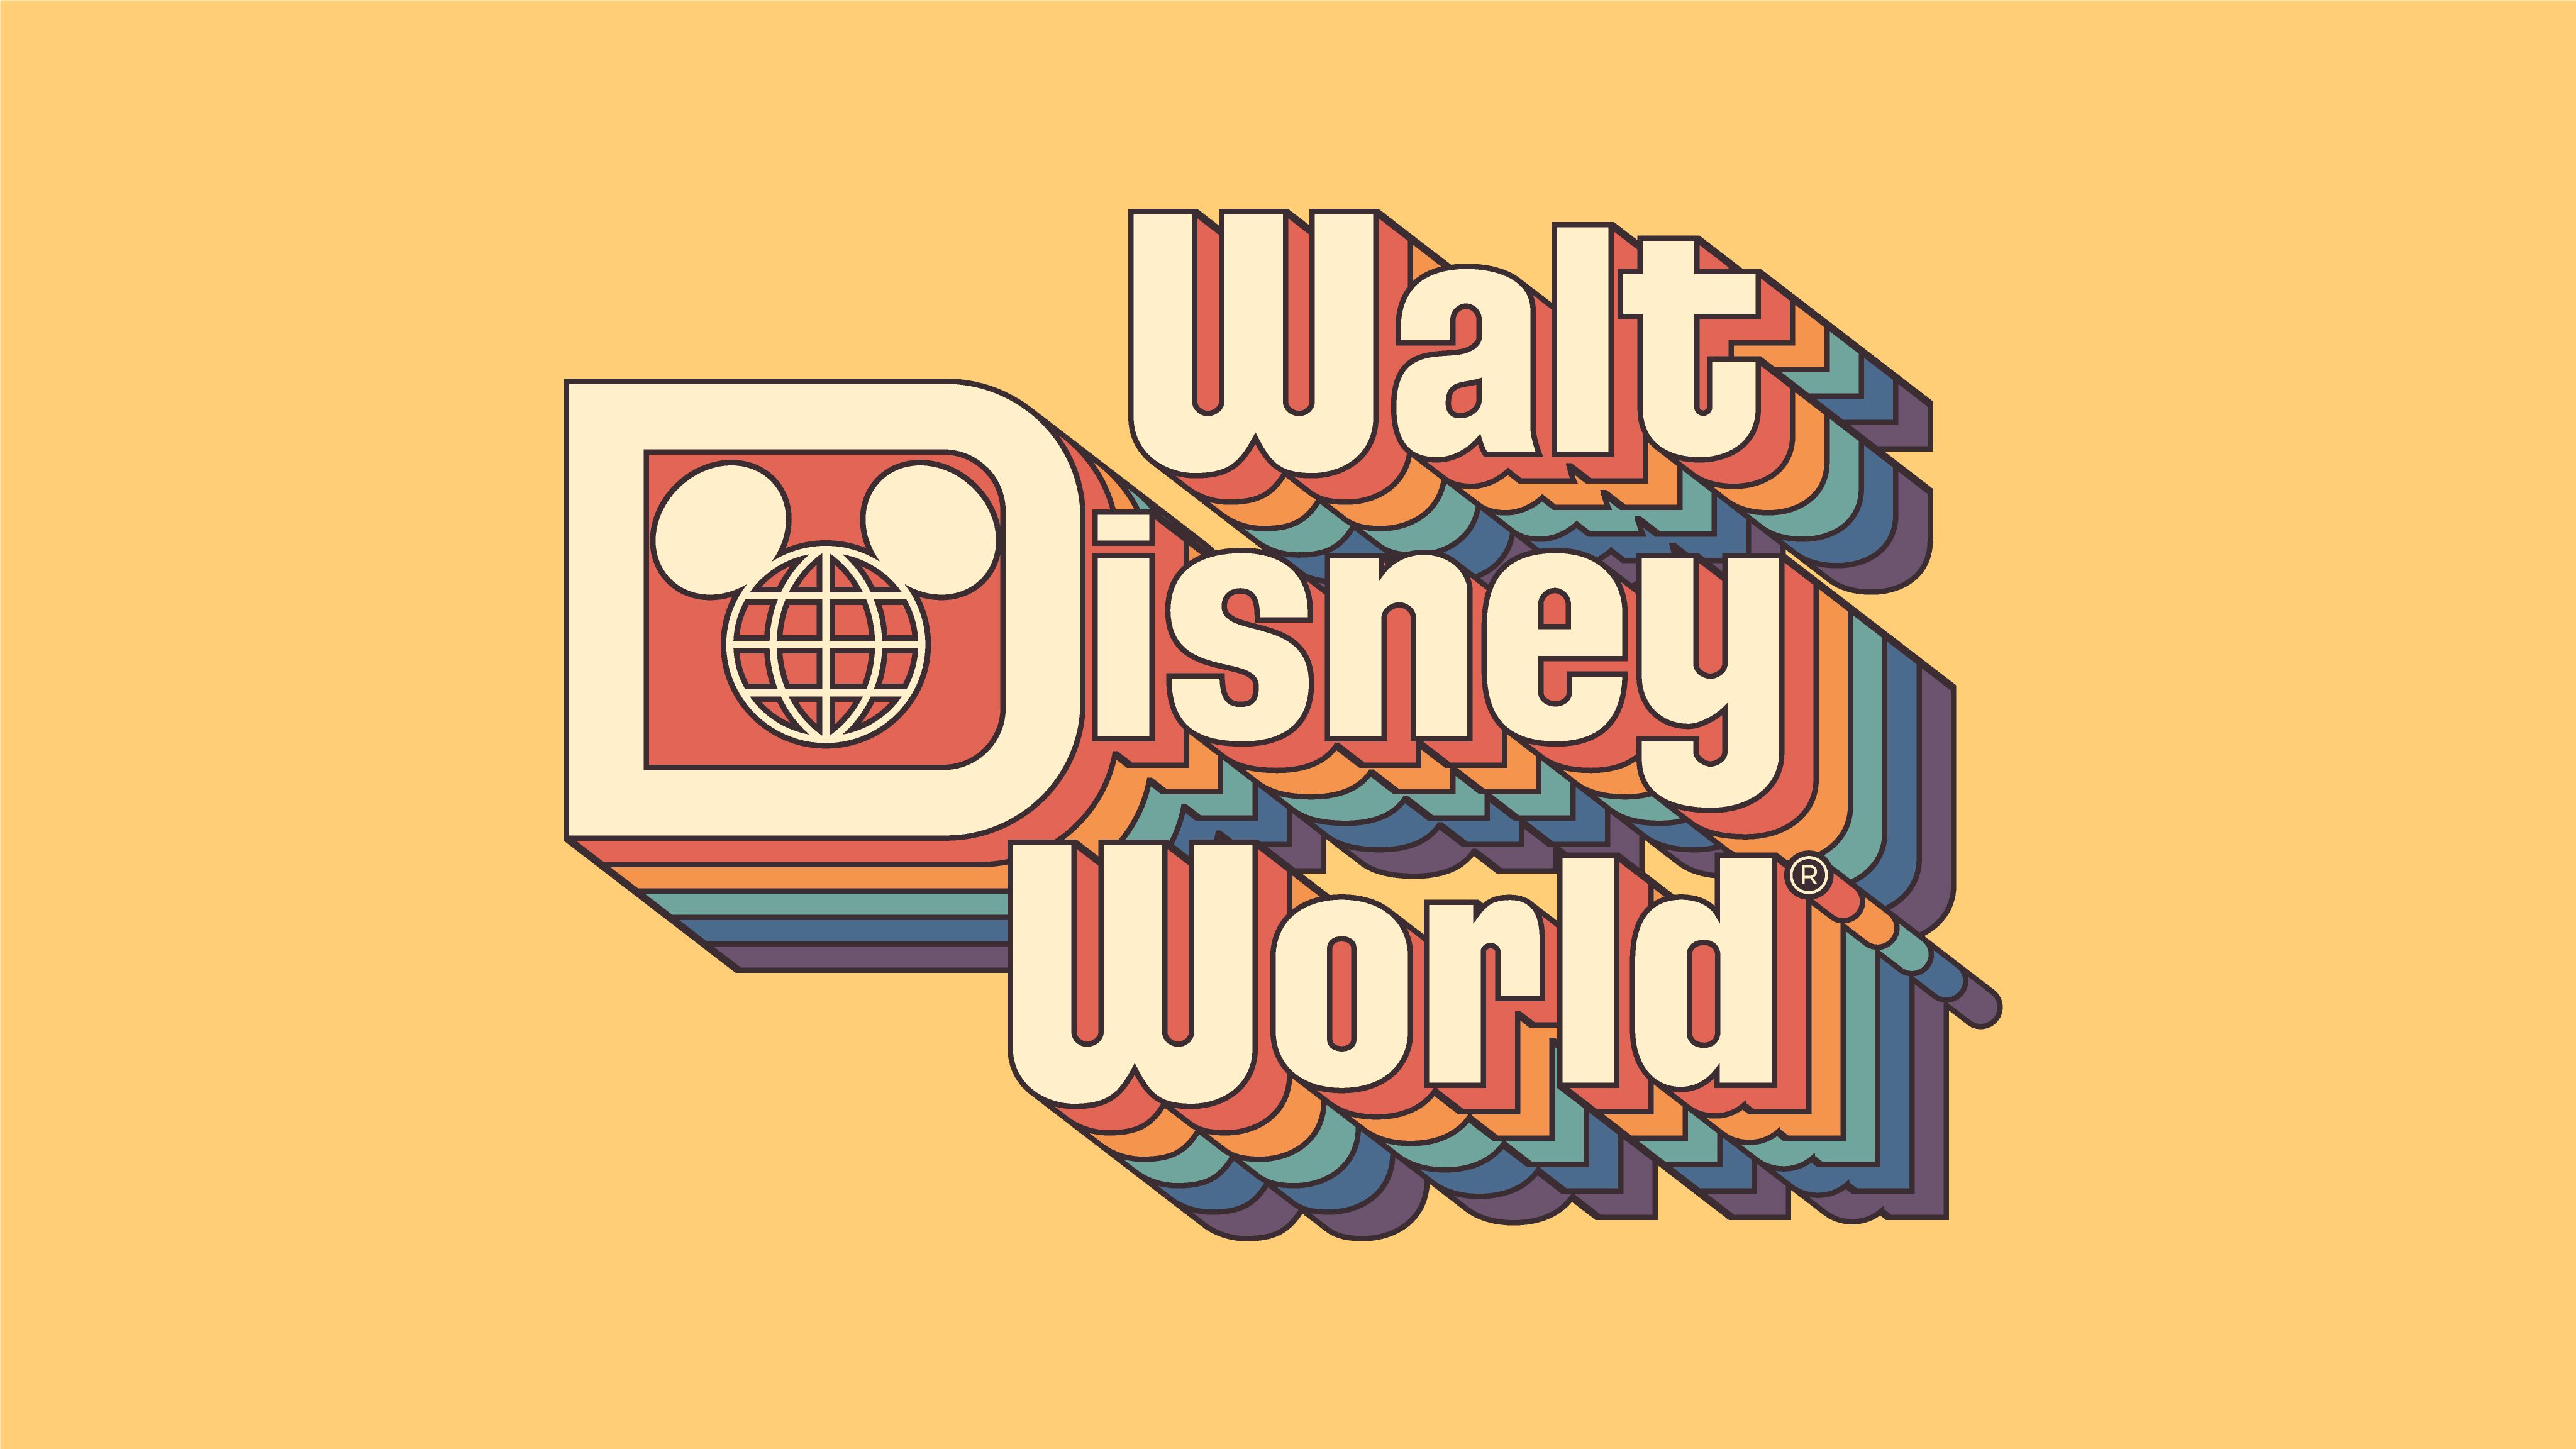 The walt disney world logo in a rainbow color - Disney